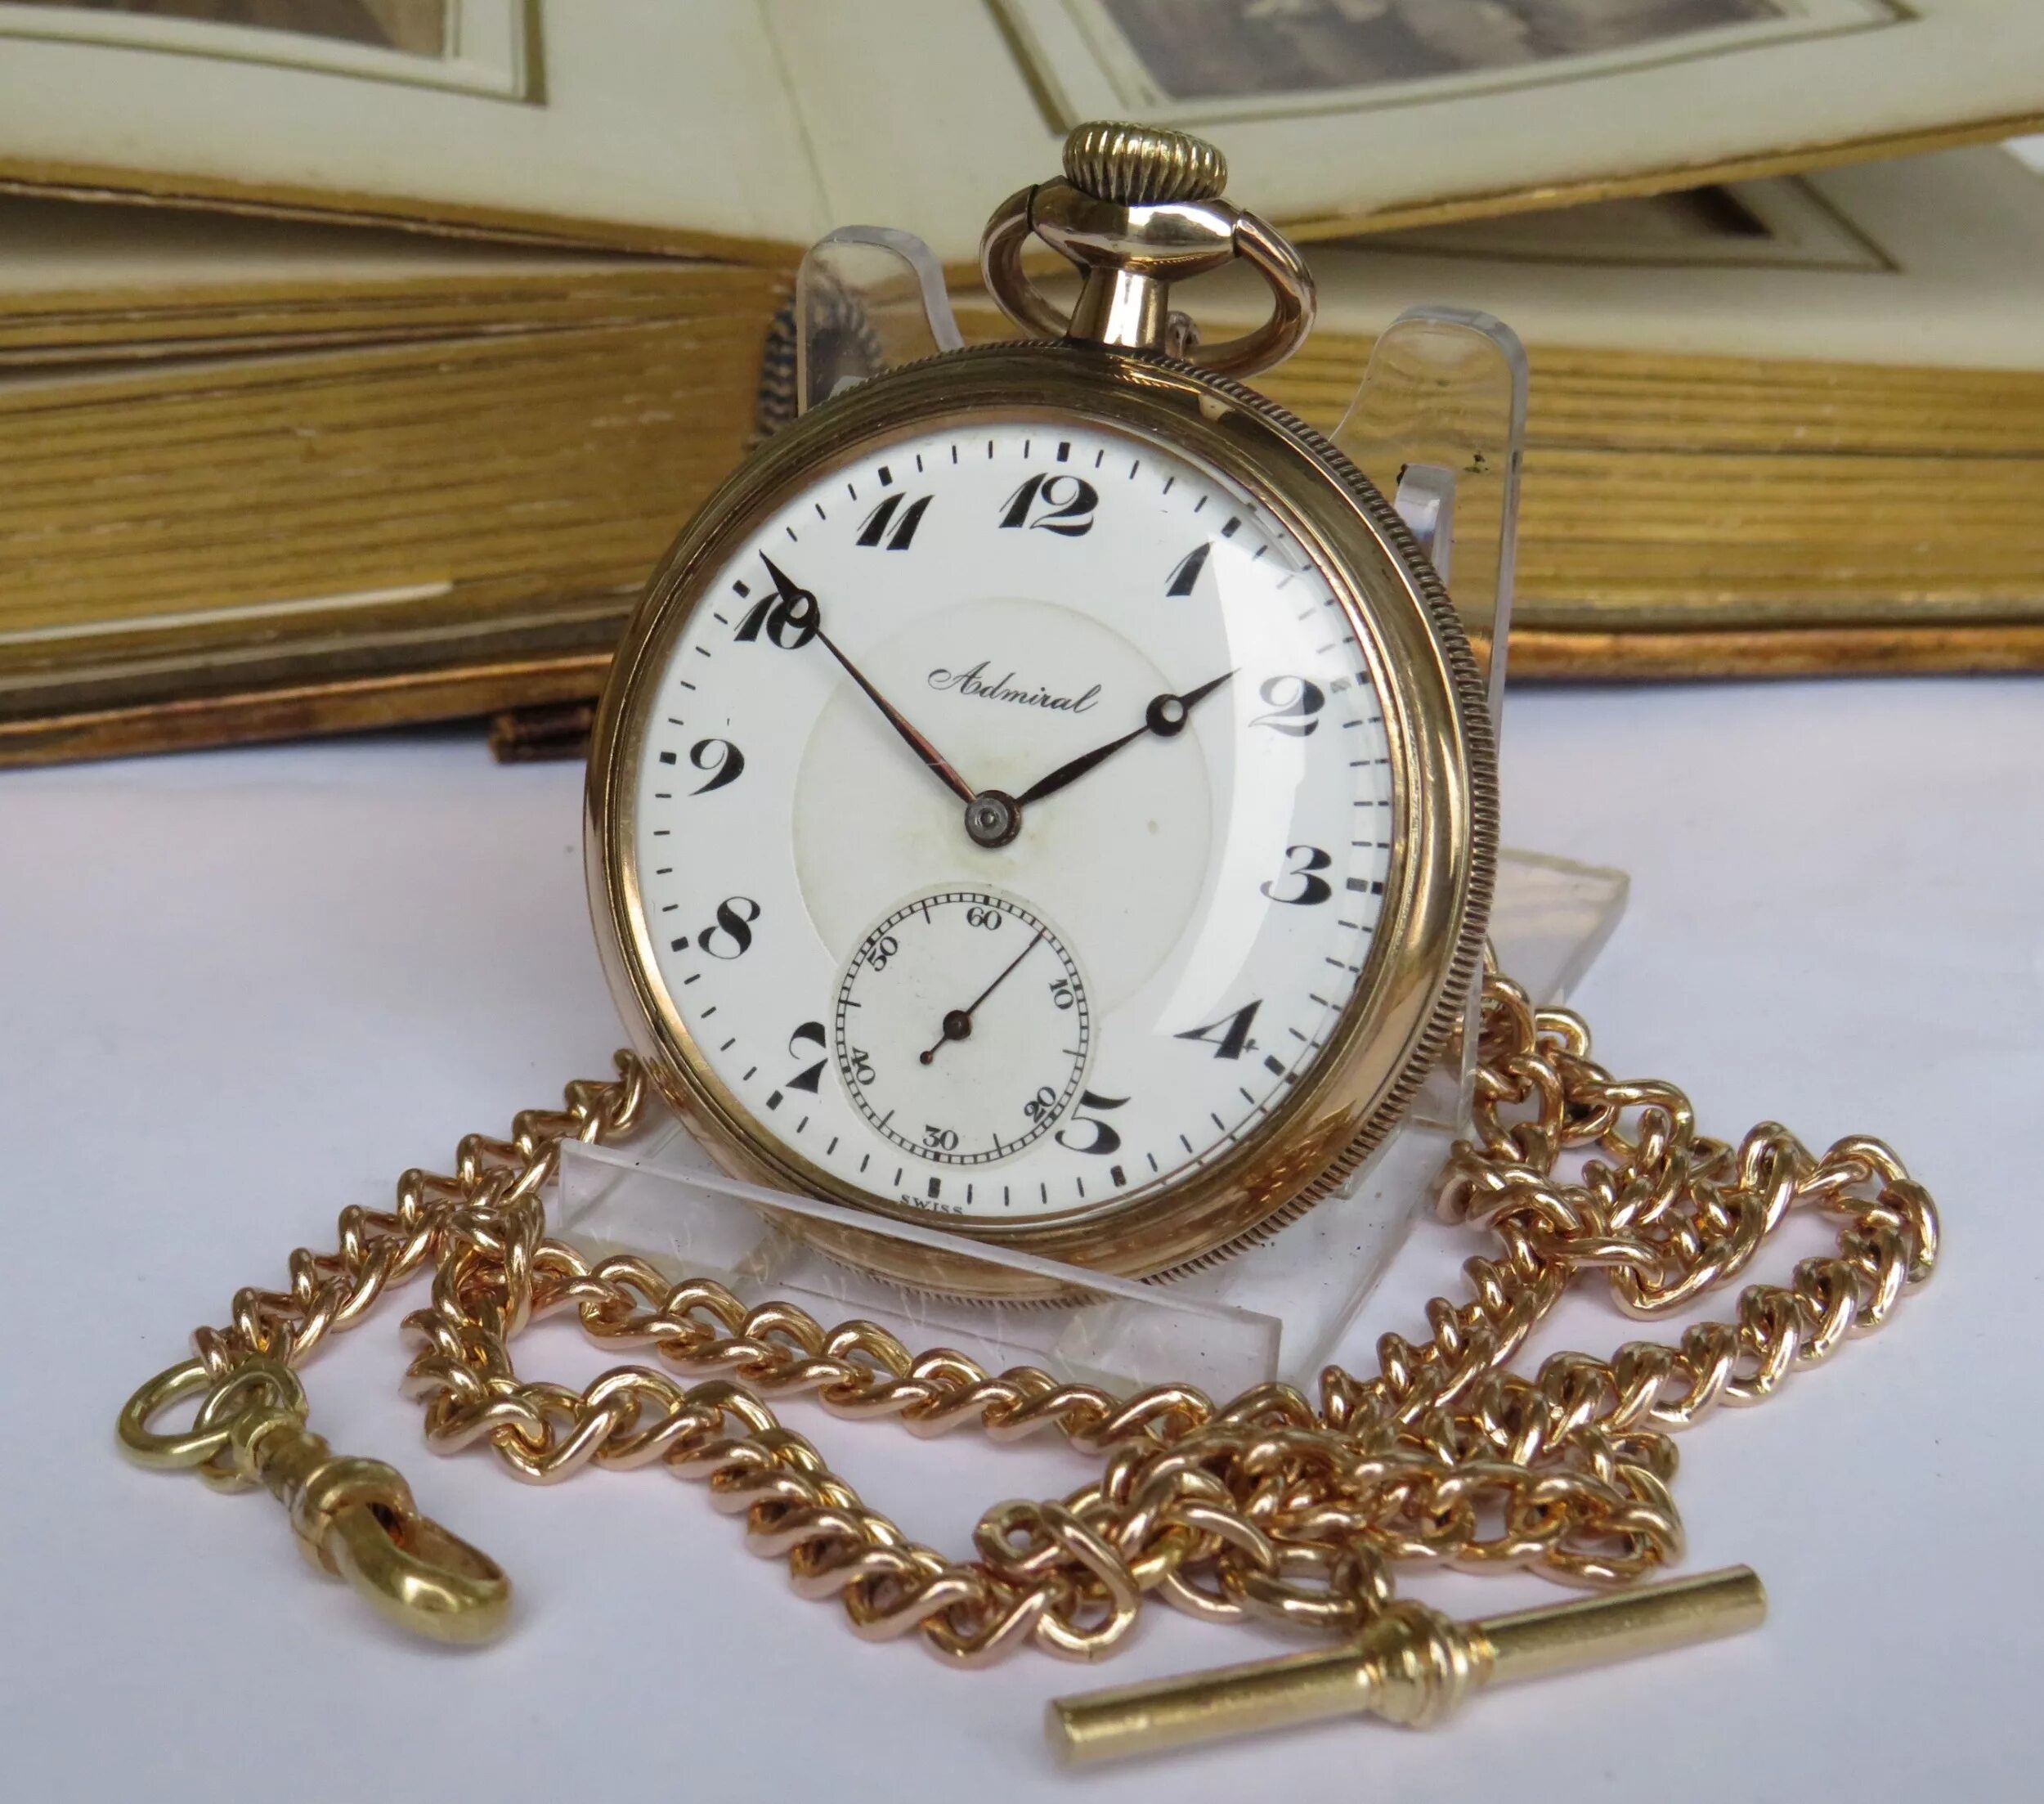 Швейцарские карманные часы. Карманные часы. Карманные часы классические. Антикварные карманные часы швейцарские. Часы кулон старинные.